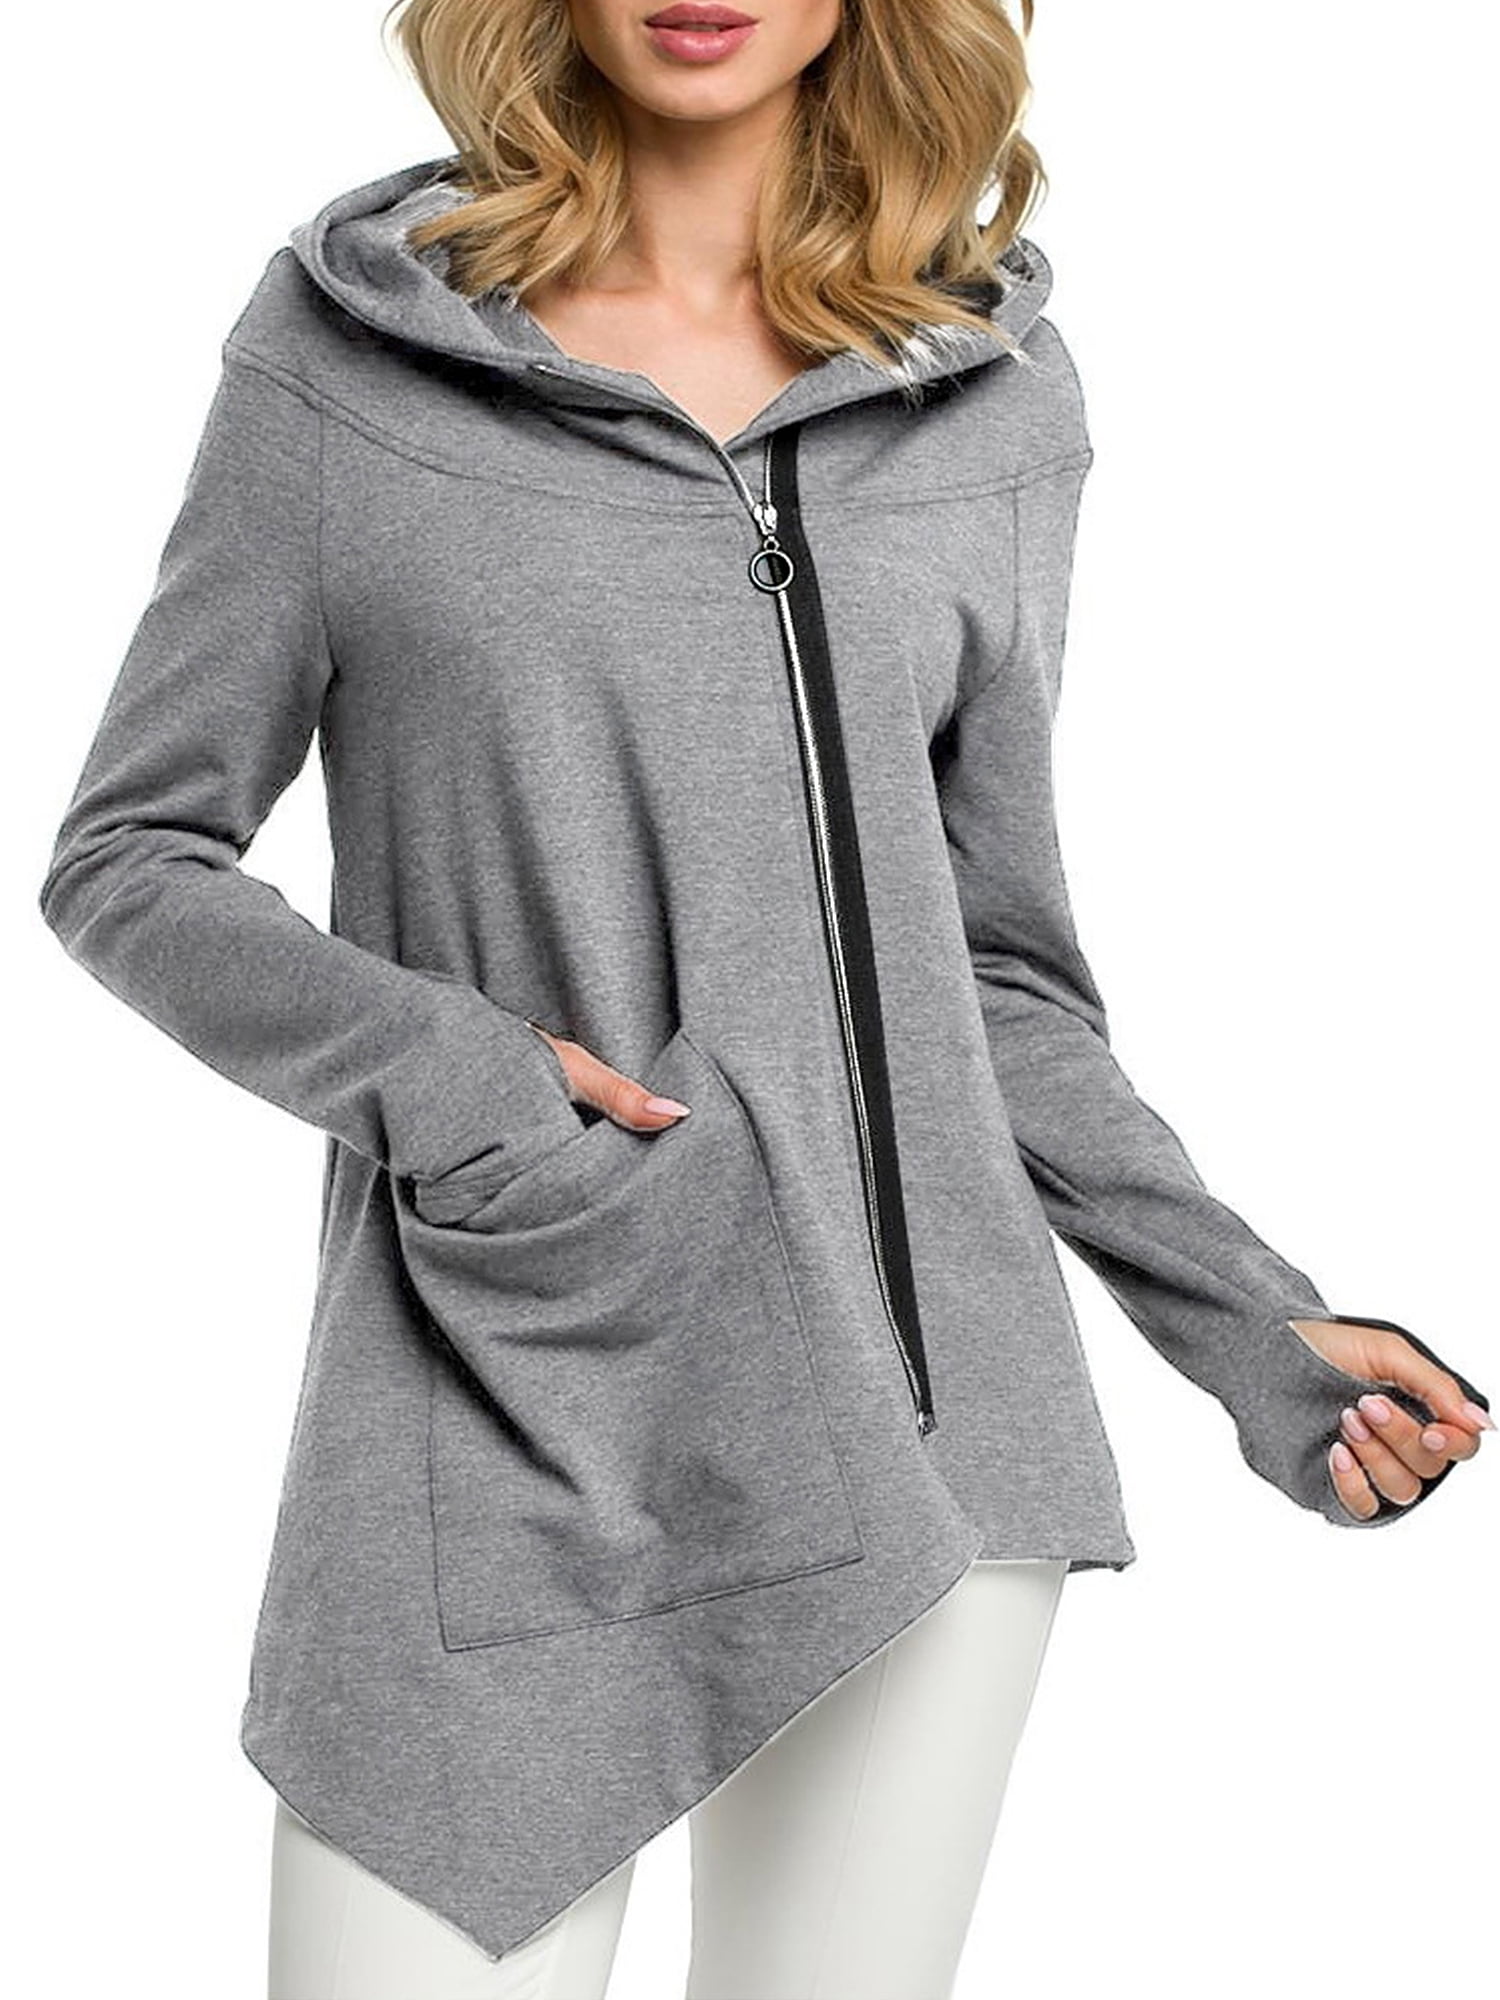 Womens Ladies Oversize Sport Sweatshirt Hoodies Long Sleeve Hoody Pullover Newly